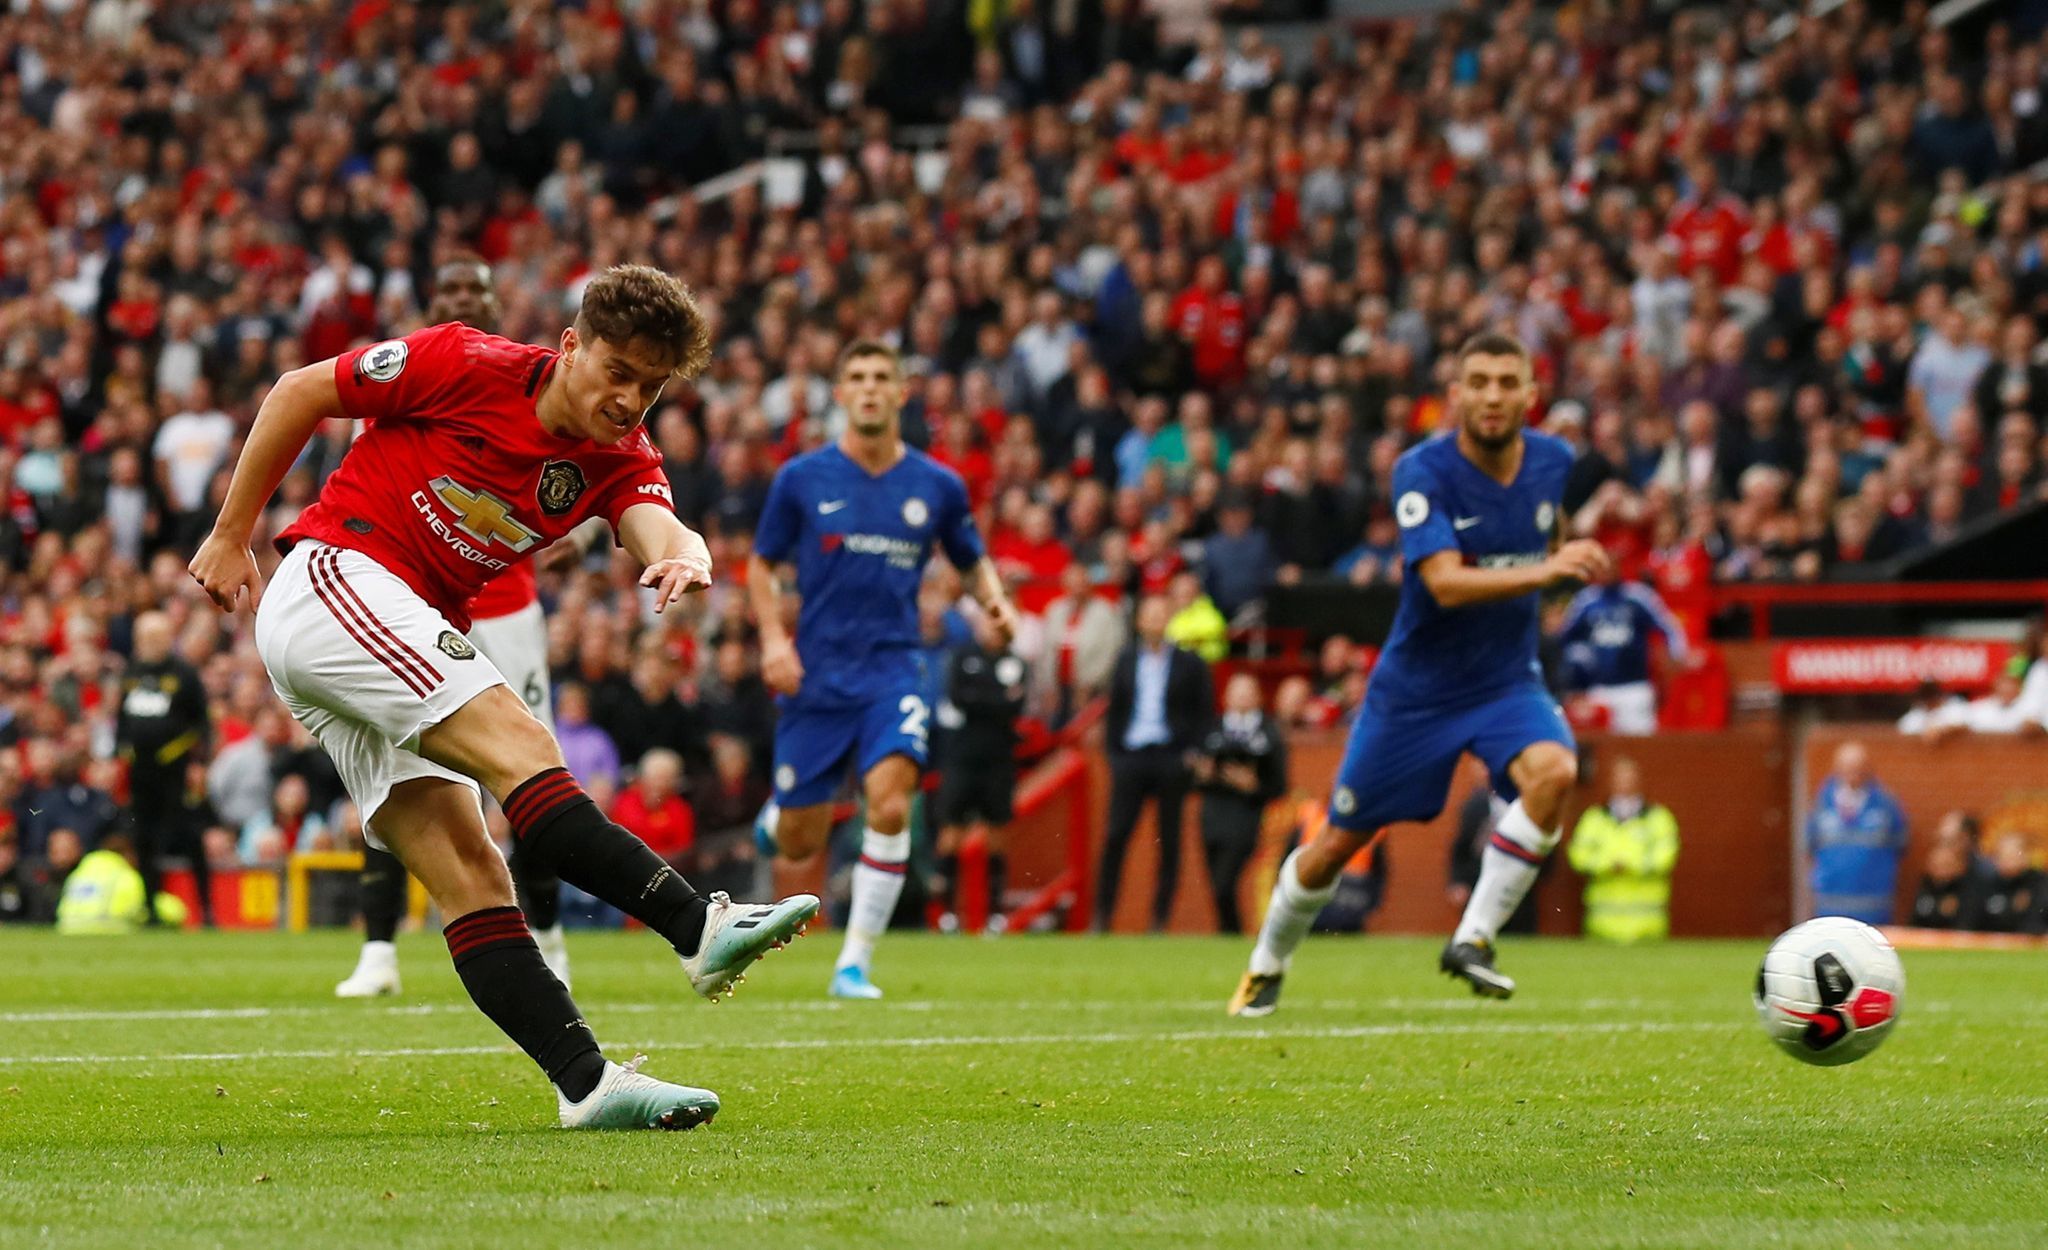 Útočník Manchesteru United Daniel James uzavírá gólem skóre utkání s Chelsea